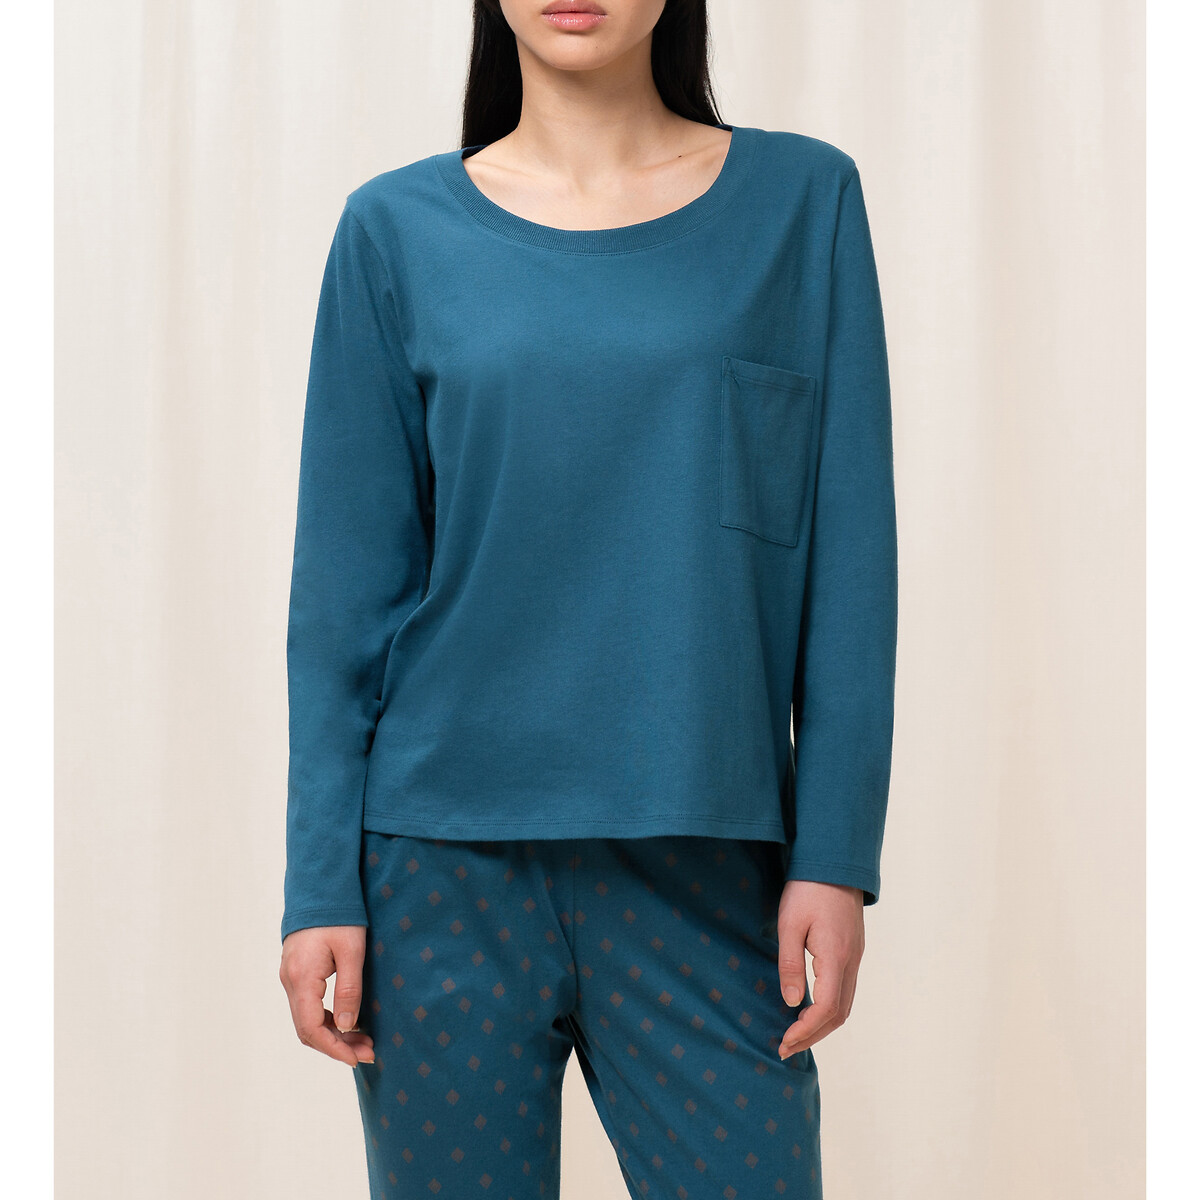 Верх от пижамы TRIUMPH Верх от пижамы Mix  Match 38 (FR) - 44 (RUS) синий, размер 38 (FR) - 44 (RUS) Верх от пижамы Mix  Match 38 (FR) - 44 (RUS) синий - фото 1